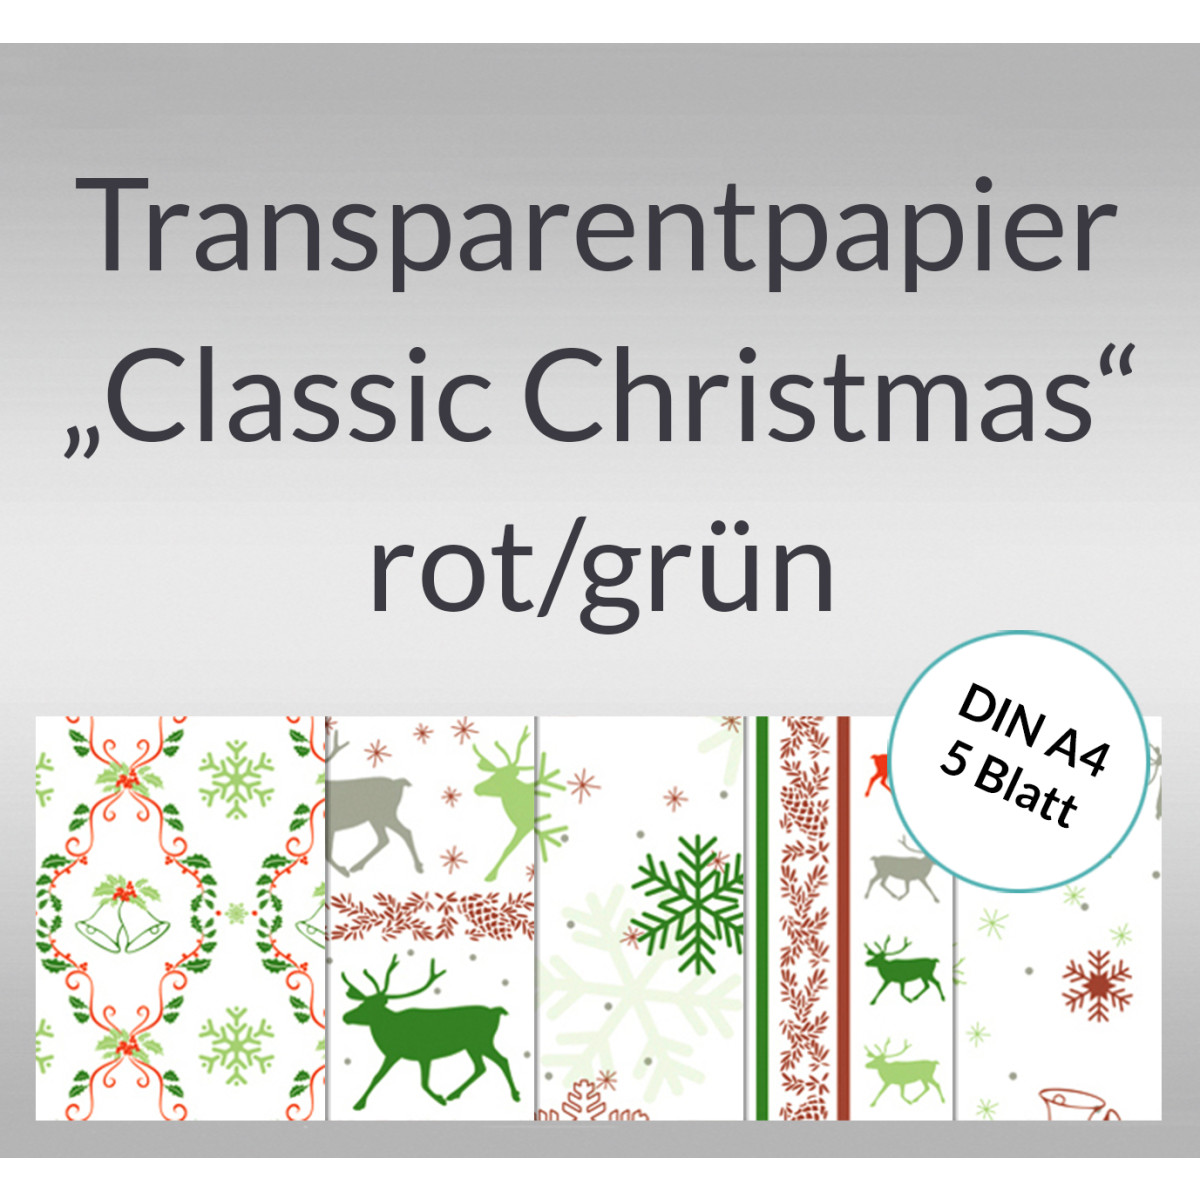 Transparentpapier "Classic Christmas" rot/grün DIN A4 - 5 Blatt